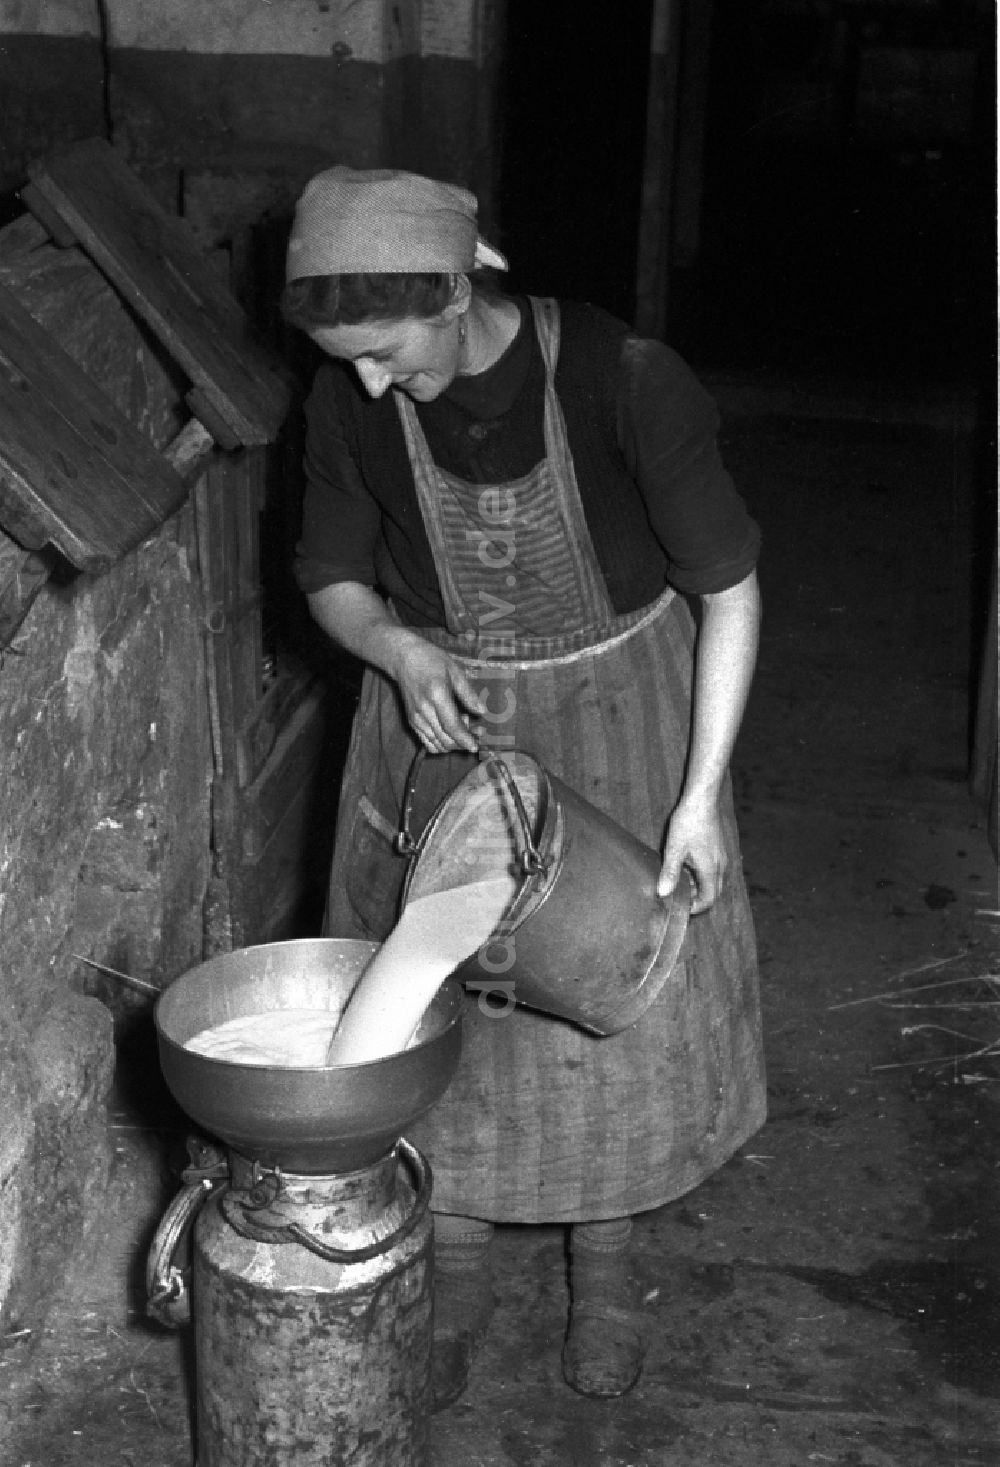 DDR-Bildarchiv: Reichstädt - Arbeiten zur Milchproduktion in einem Landwirtschaftsbetrieb in Reichstädt in Thüringen in der DDR